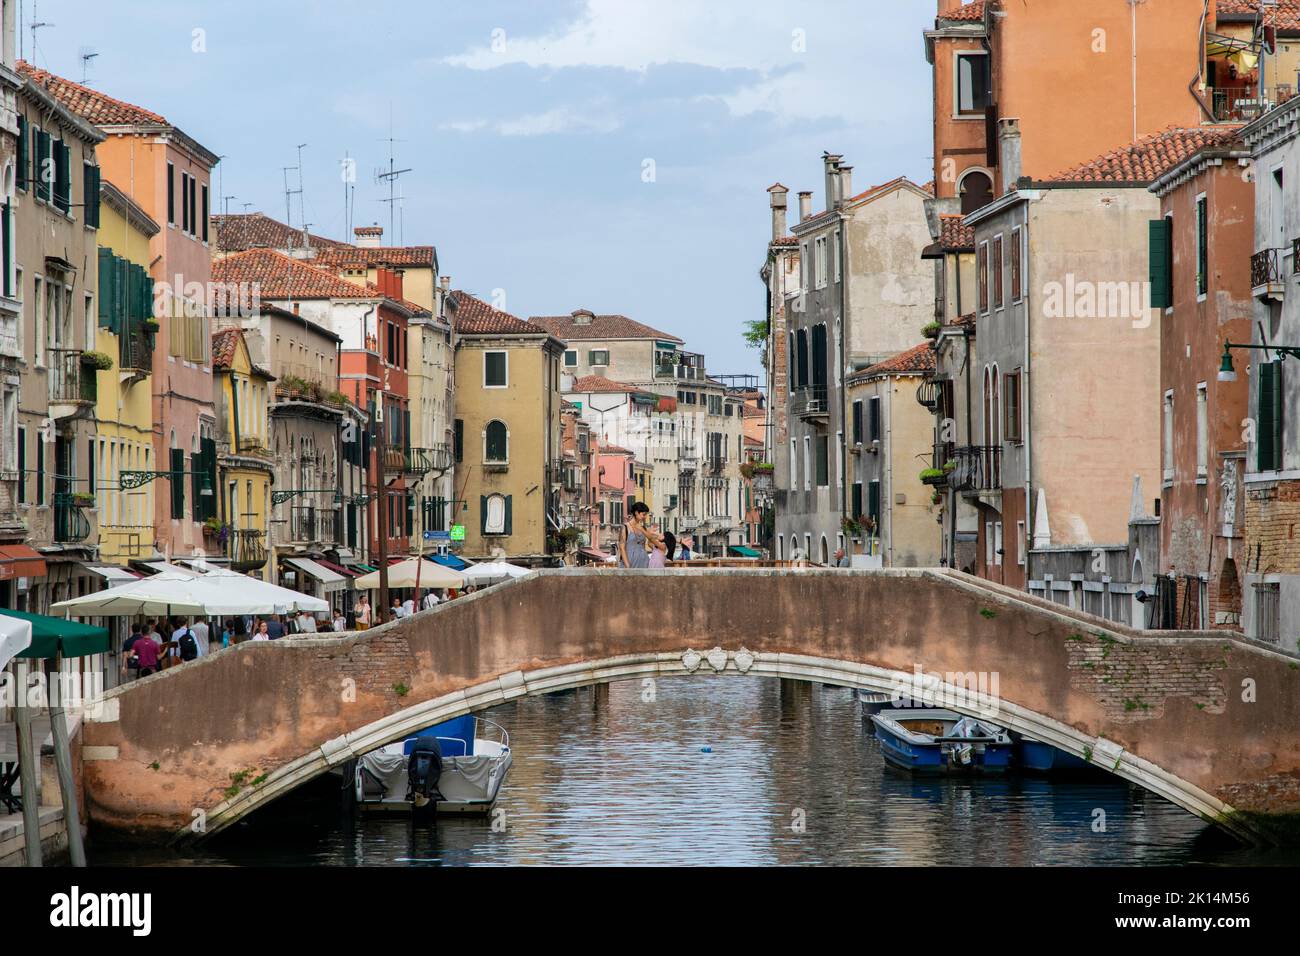 A pedestrian bridge over the Rio della Misericordia at Canareggio, Venice, Italy Stock Photo